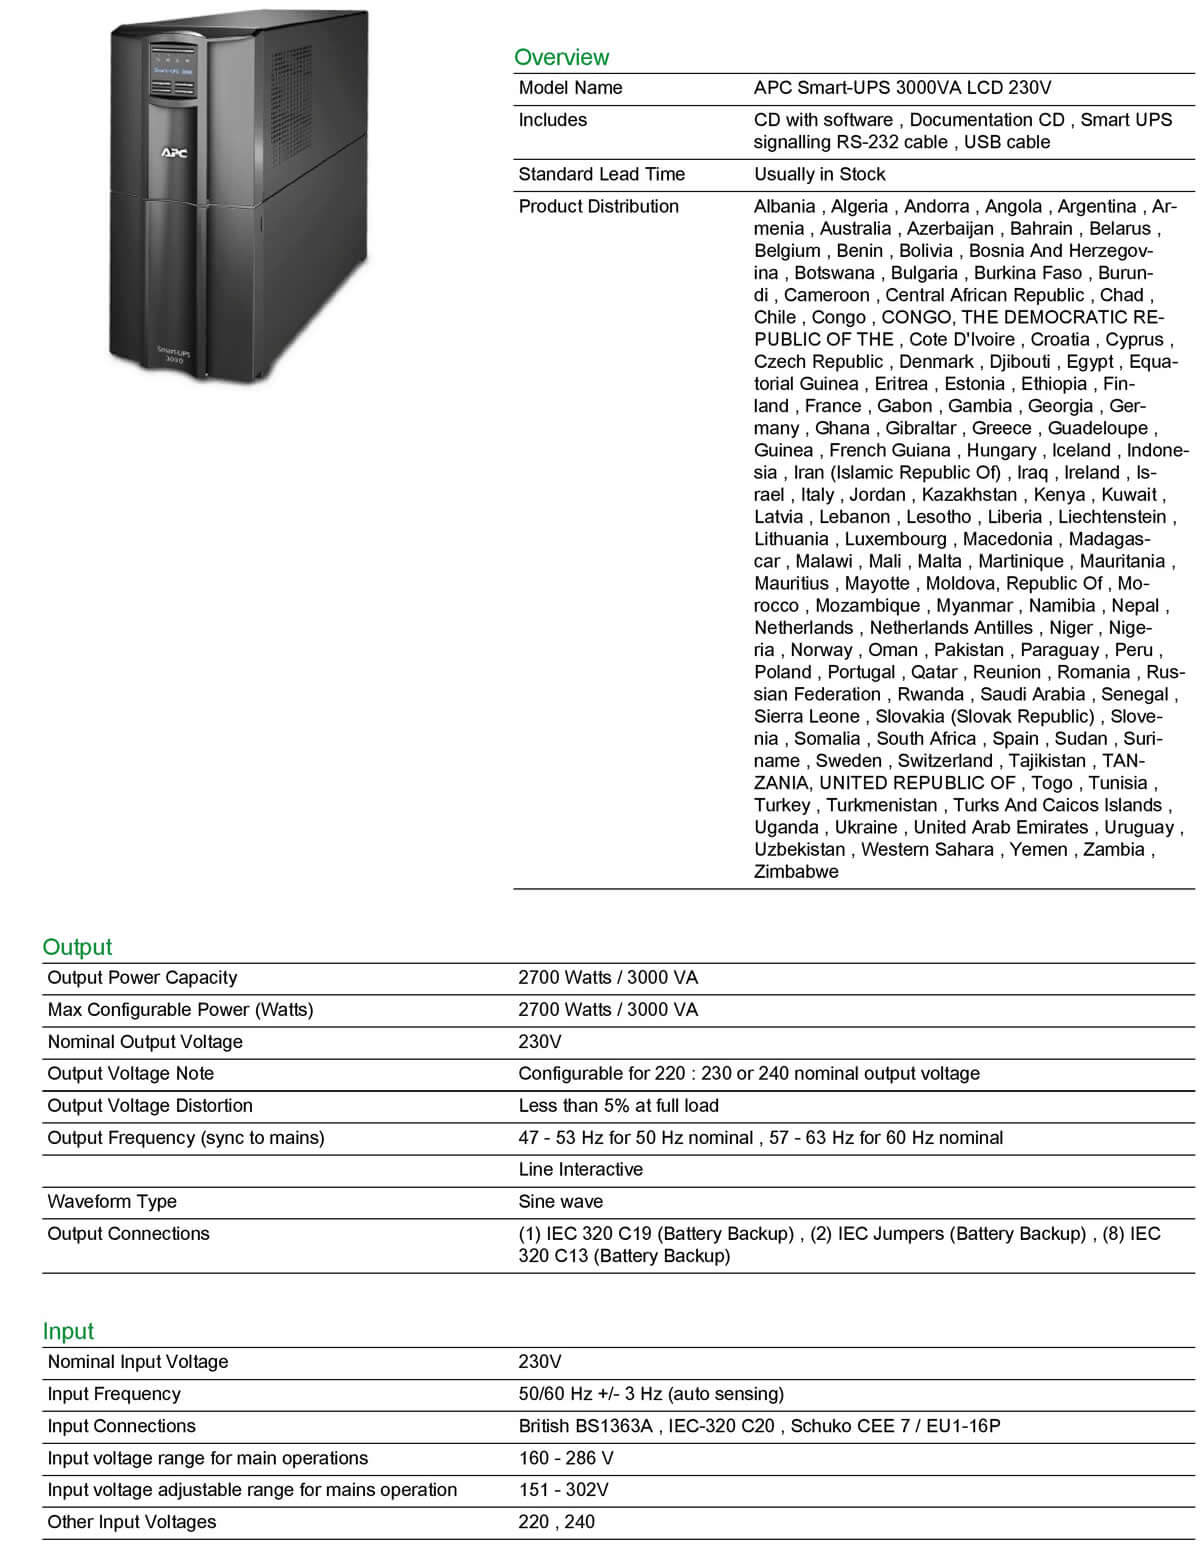 APC SMART-UPS 3000VA 230V SMT3000I 04